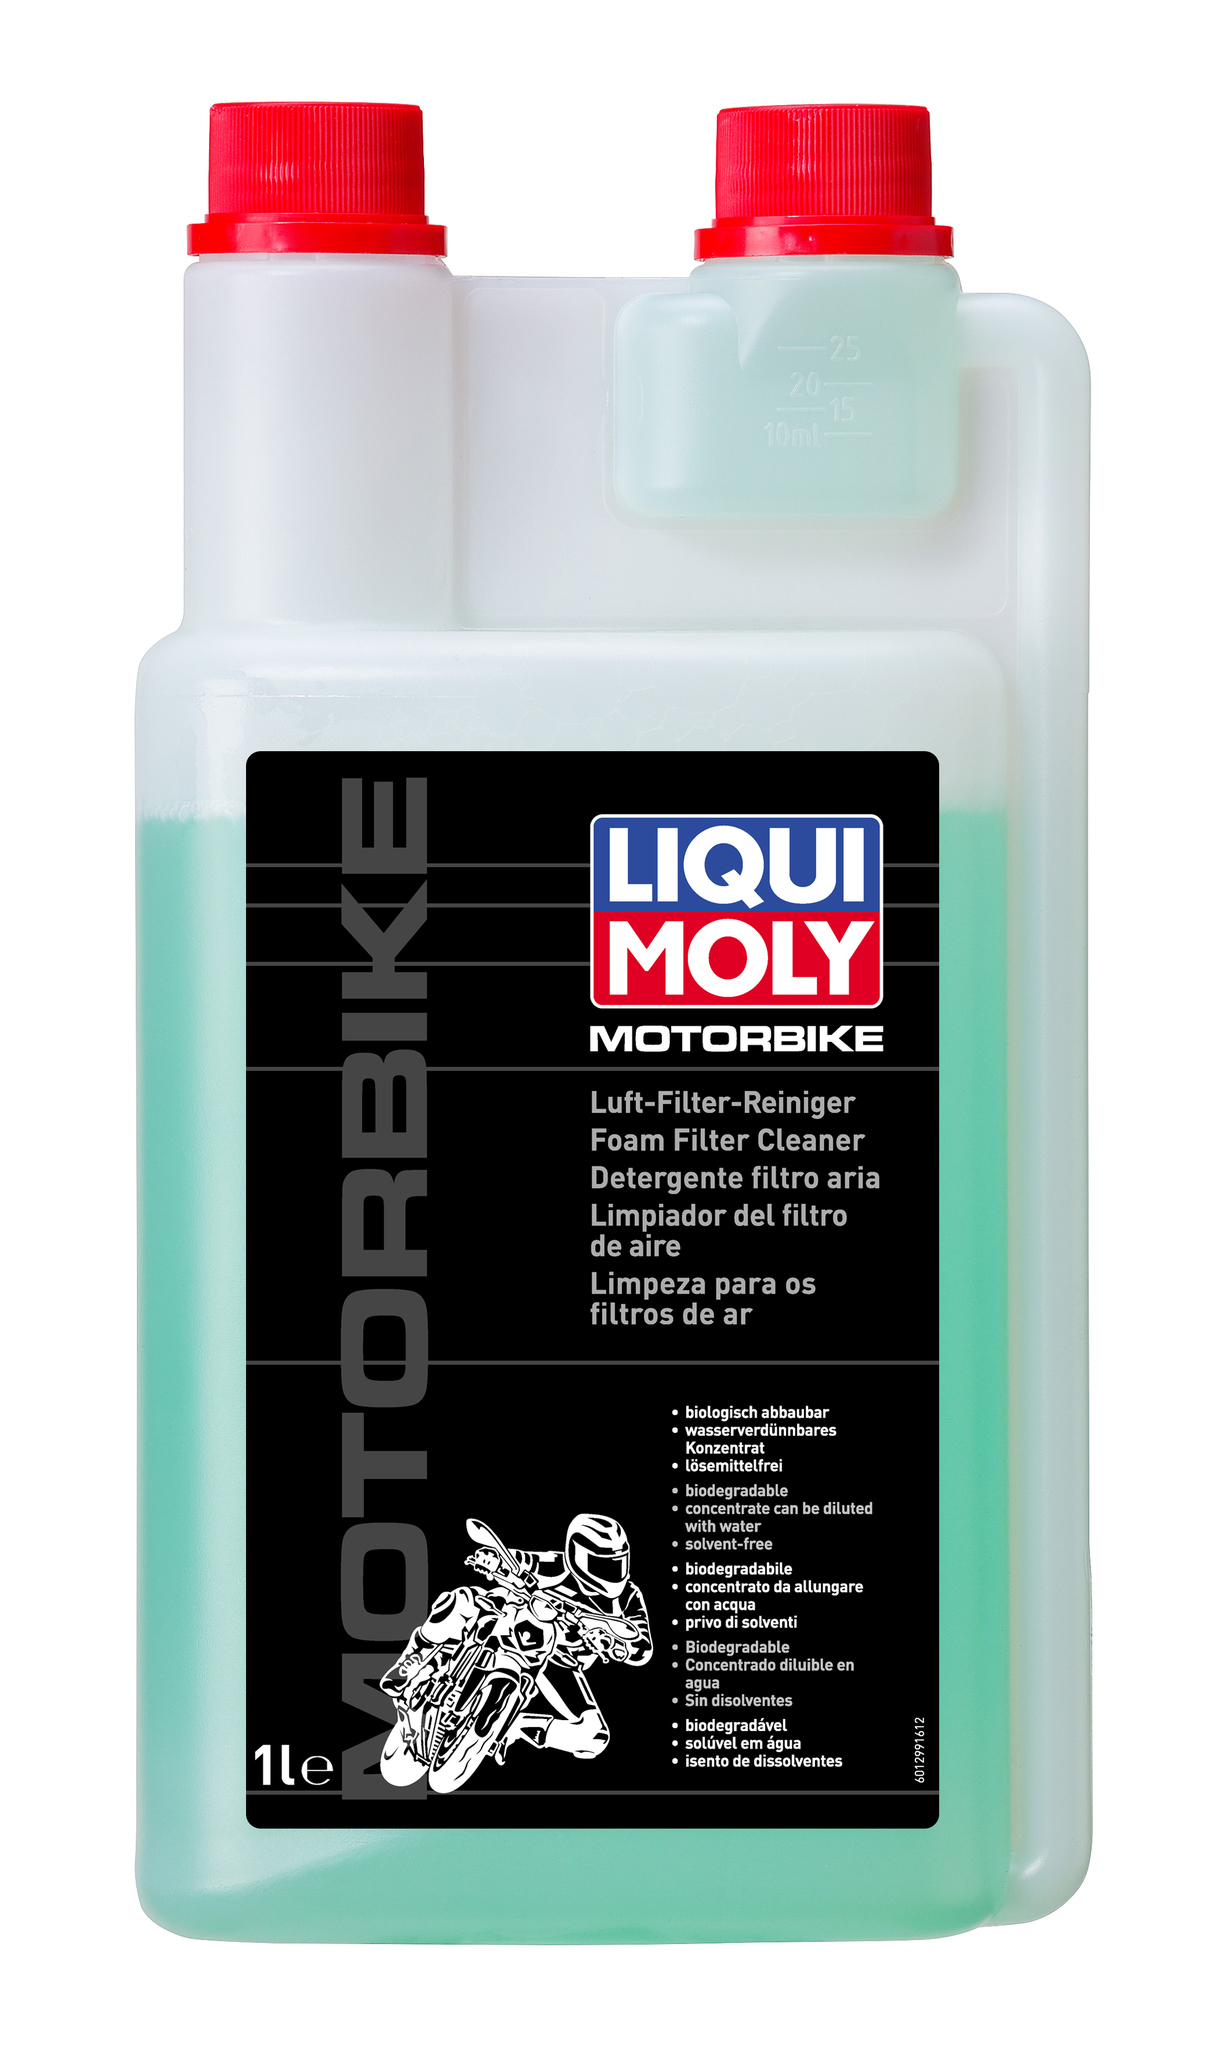 Liqui Moly Motorbike Luft Filter Reiniger Очиститель воздушных фильтров мототехники